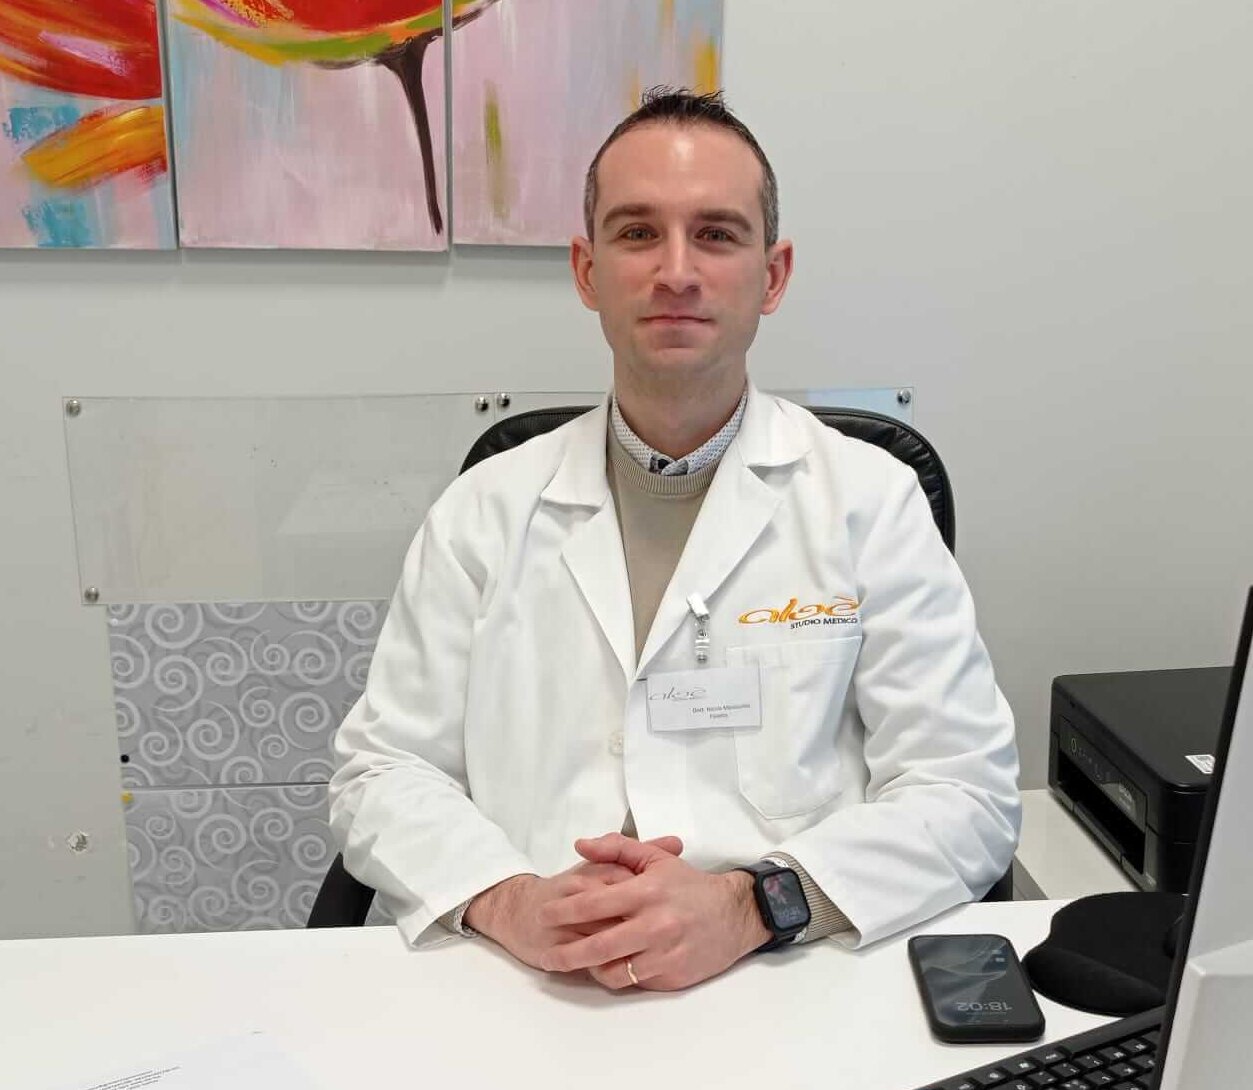 Dott. Nicola Manocchio specialista in Medicina Fisica e Riabilitativa